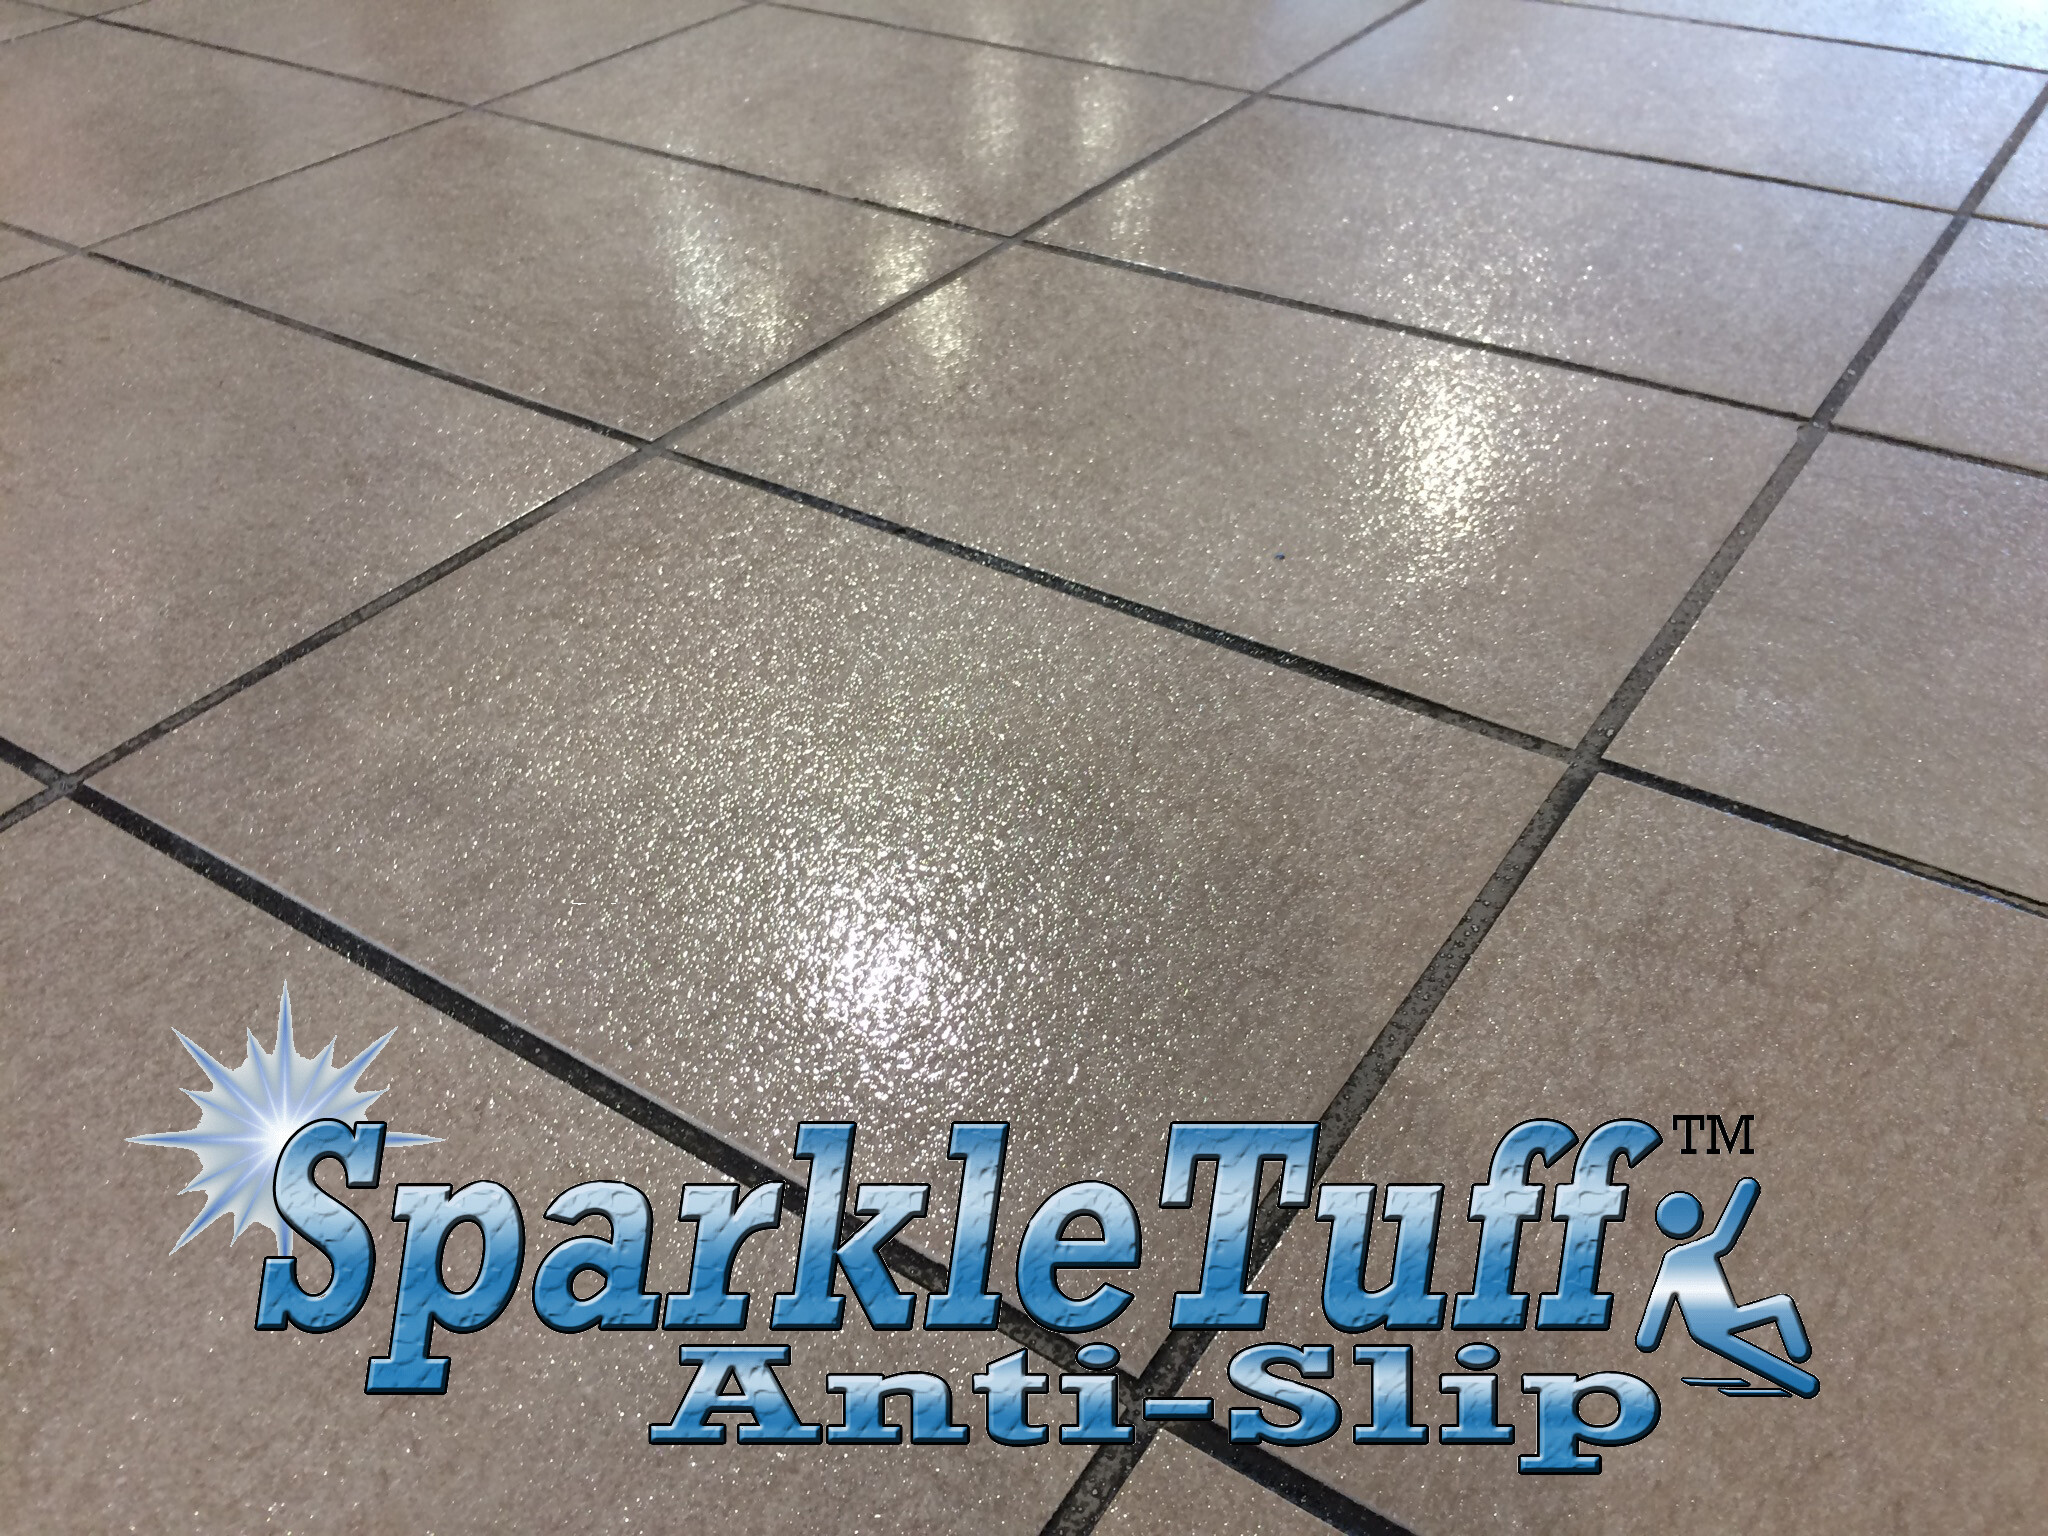 Sparkletuff Anti Slip Floor Coating, How To Make Tile Floor Less Slippery